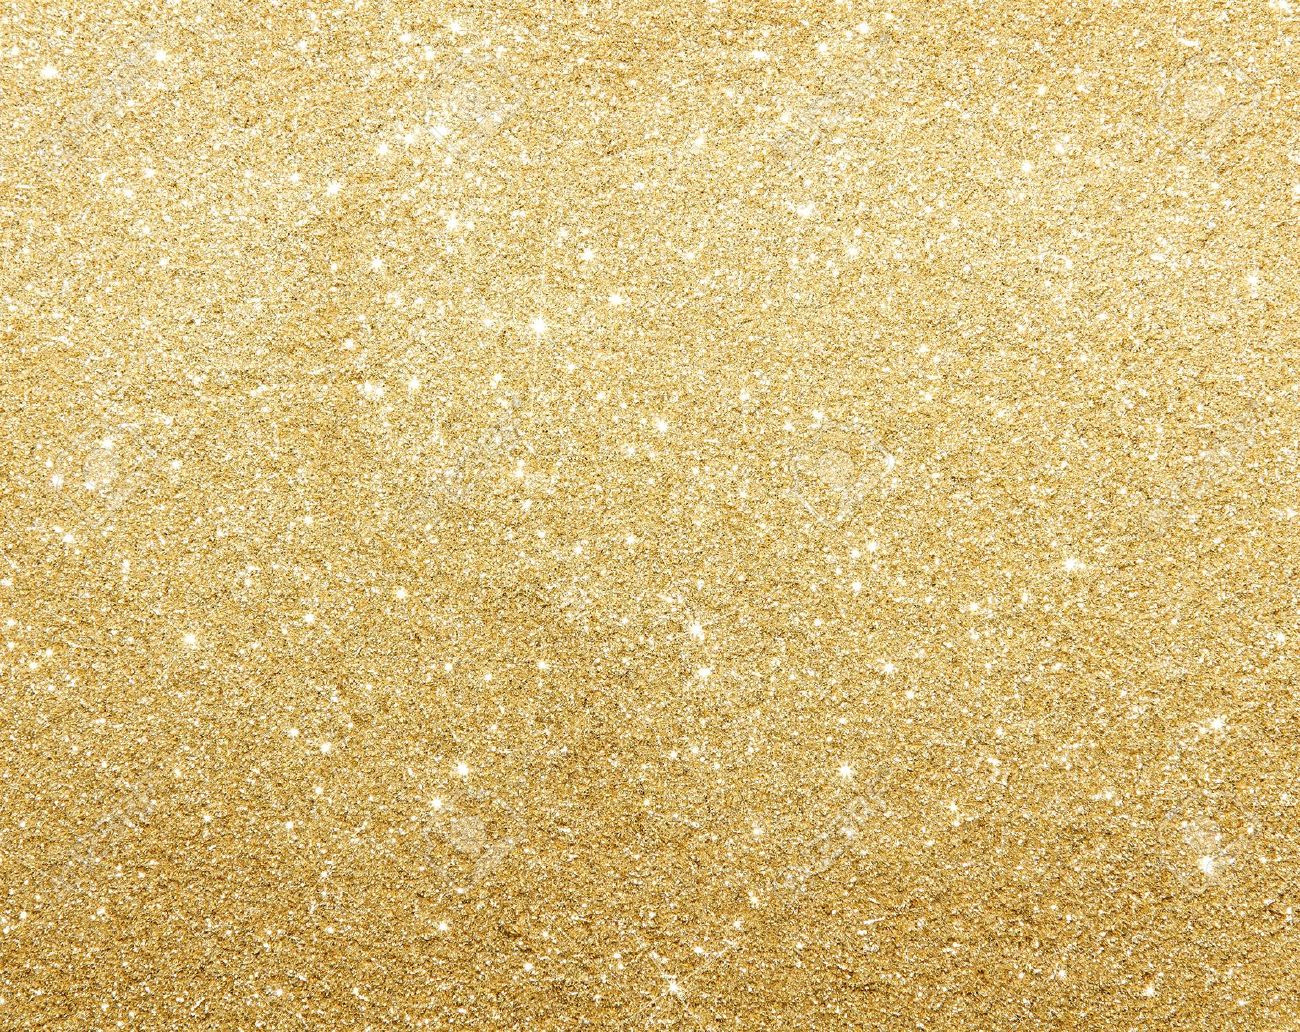 Gold Glitter Wallpaper - Light Glitter Gold Background - HD Wallpaper 